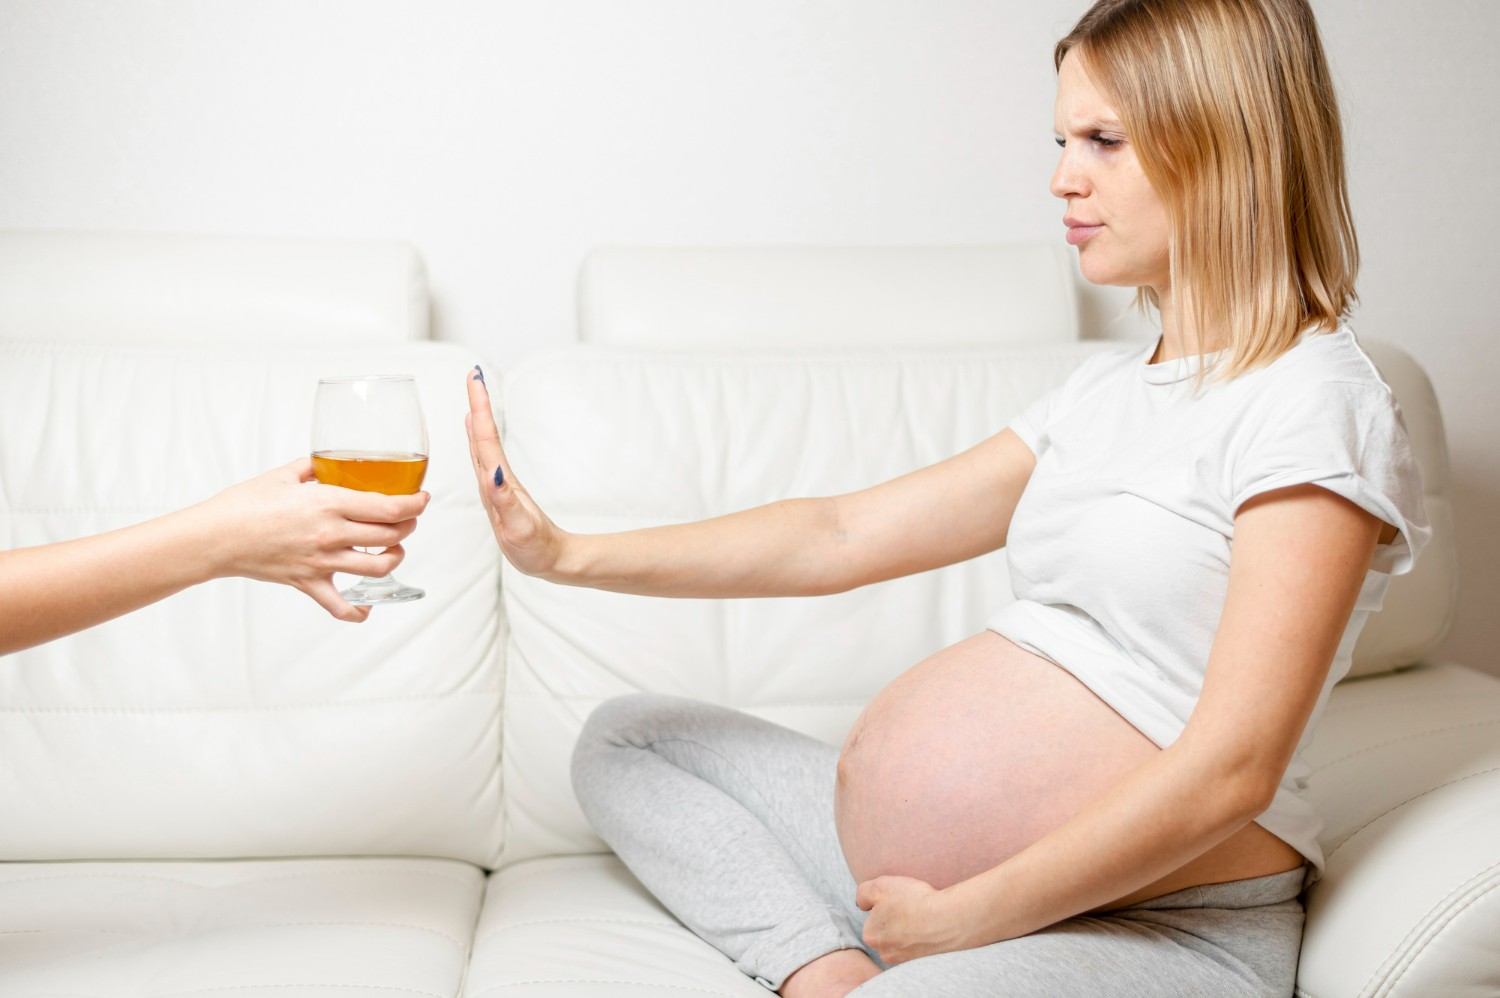 Apakah Soda Bisa Mencegah kehamilan? Intip Faktanya di sini!